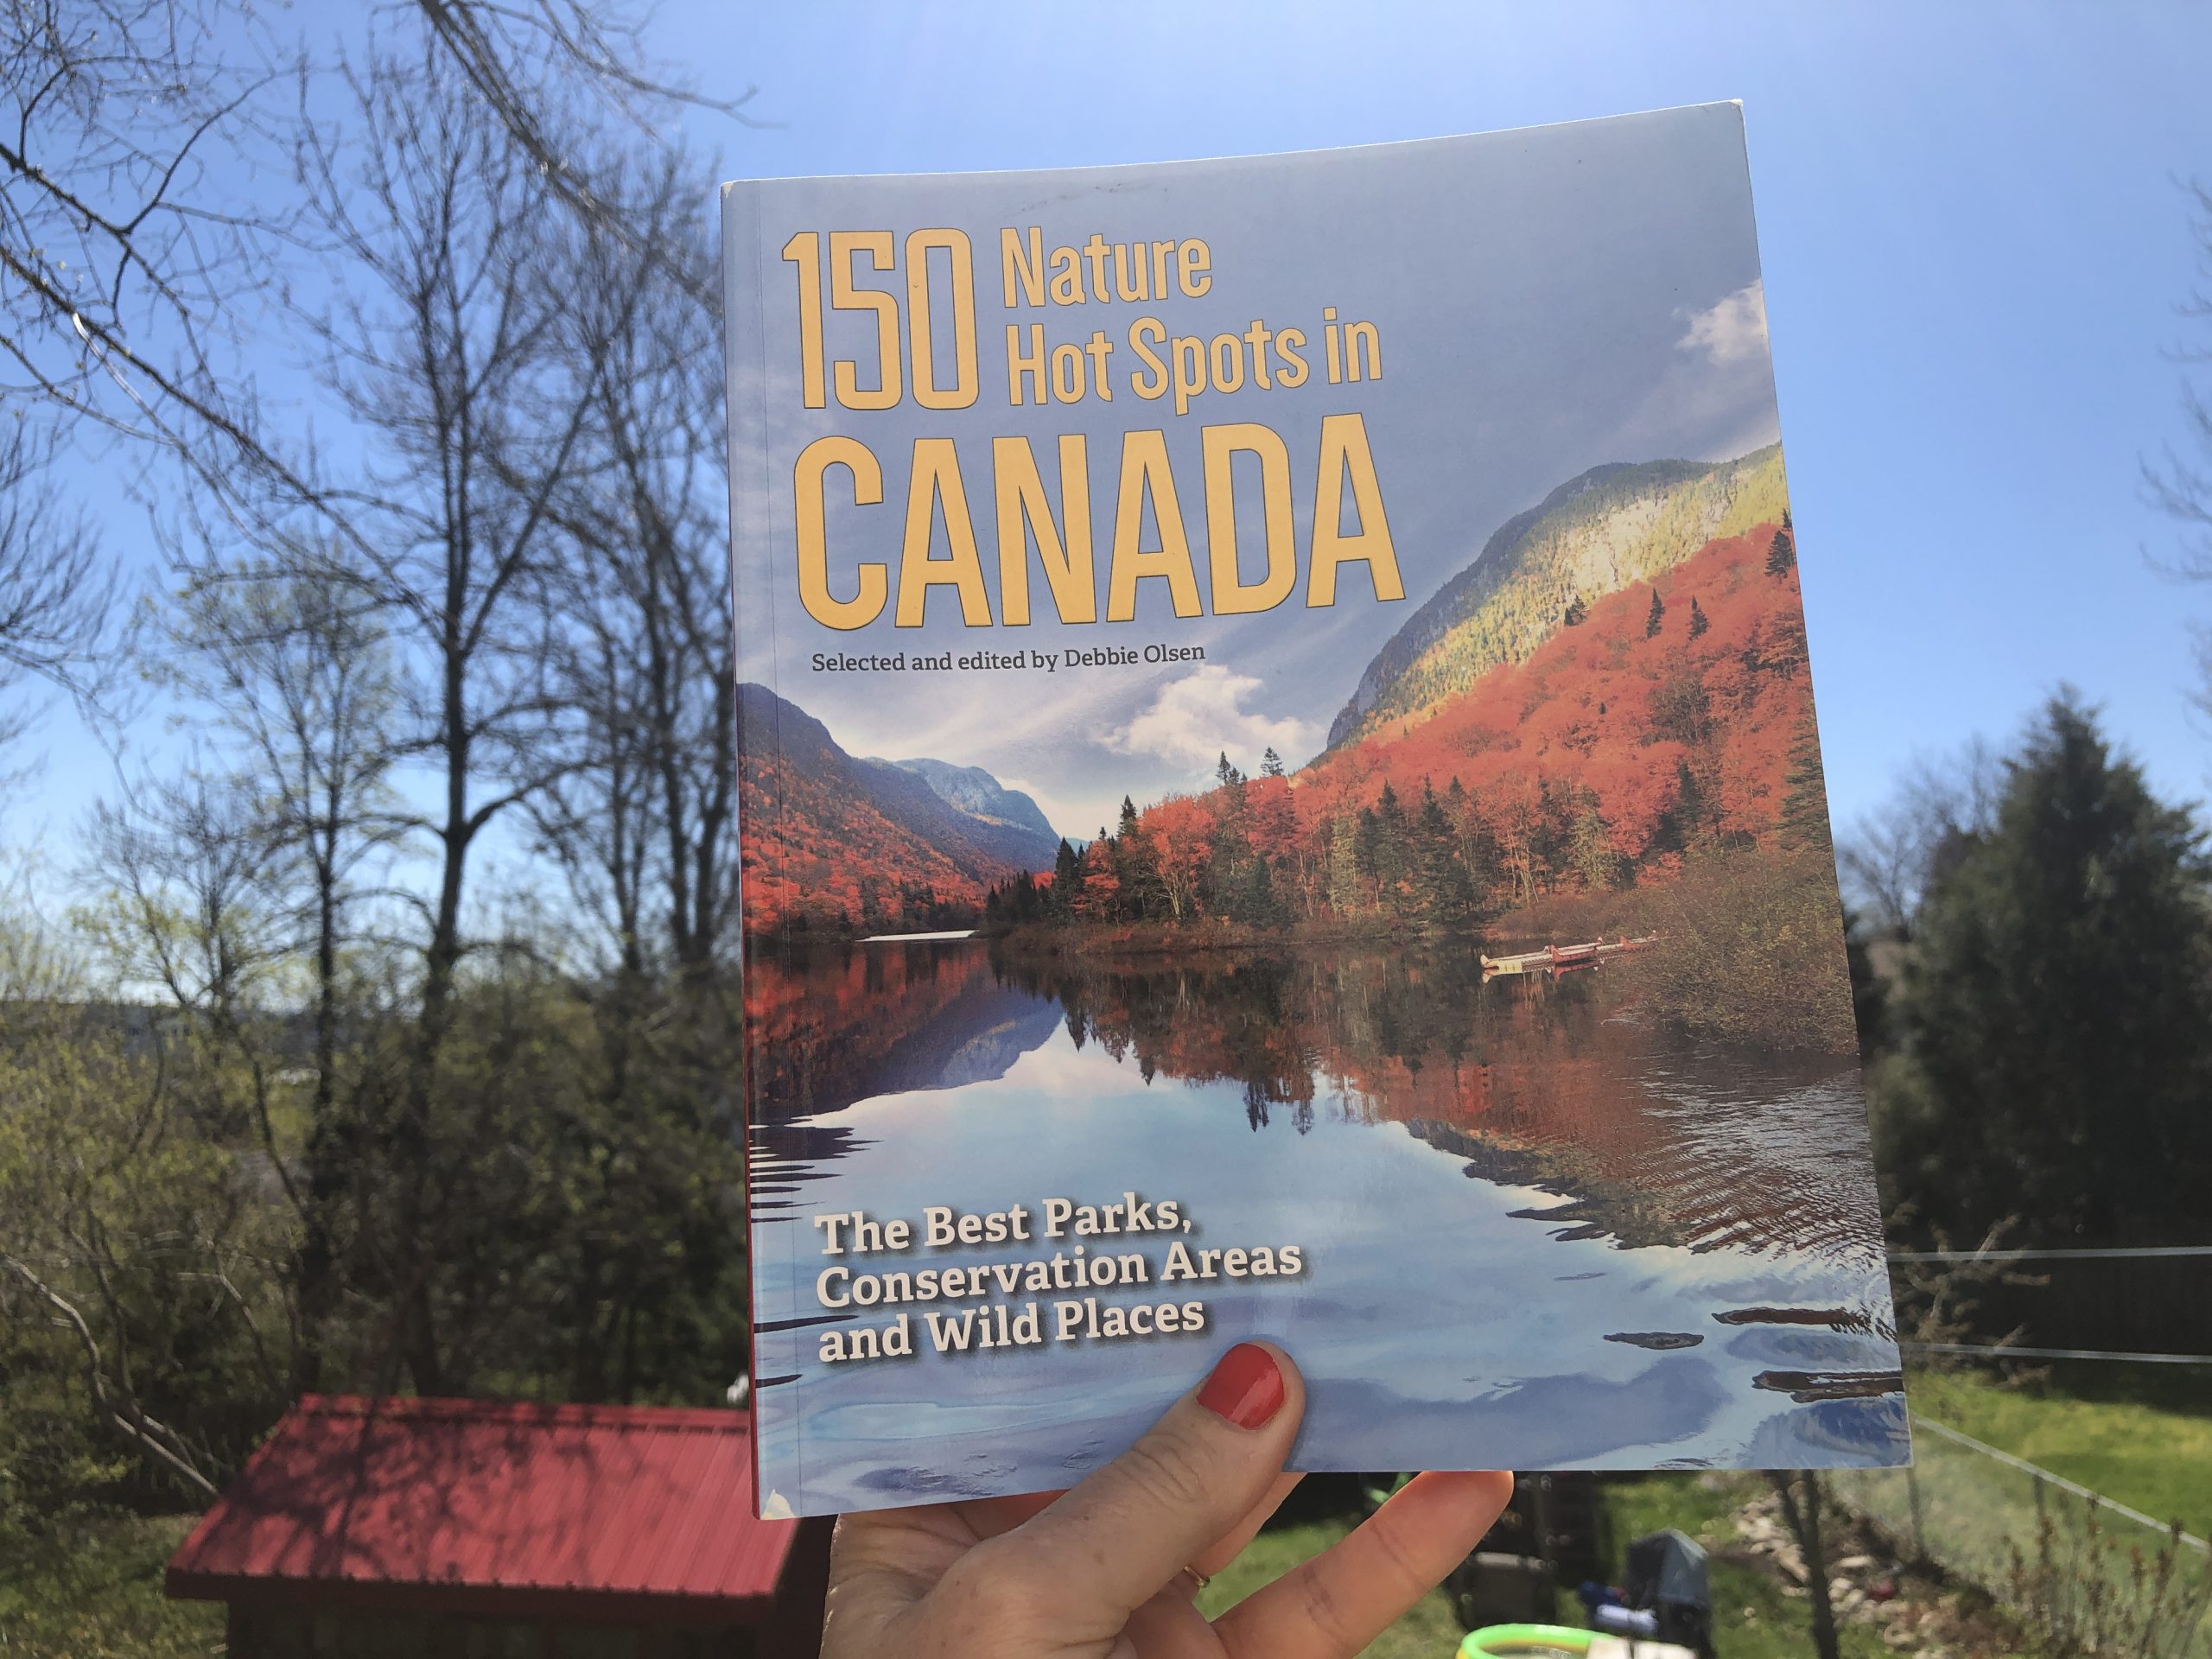 黛比奥尔森在加拿大的 150 个自然热点